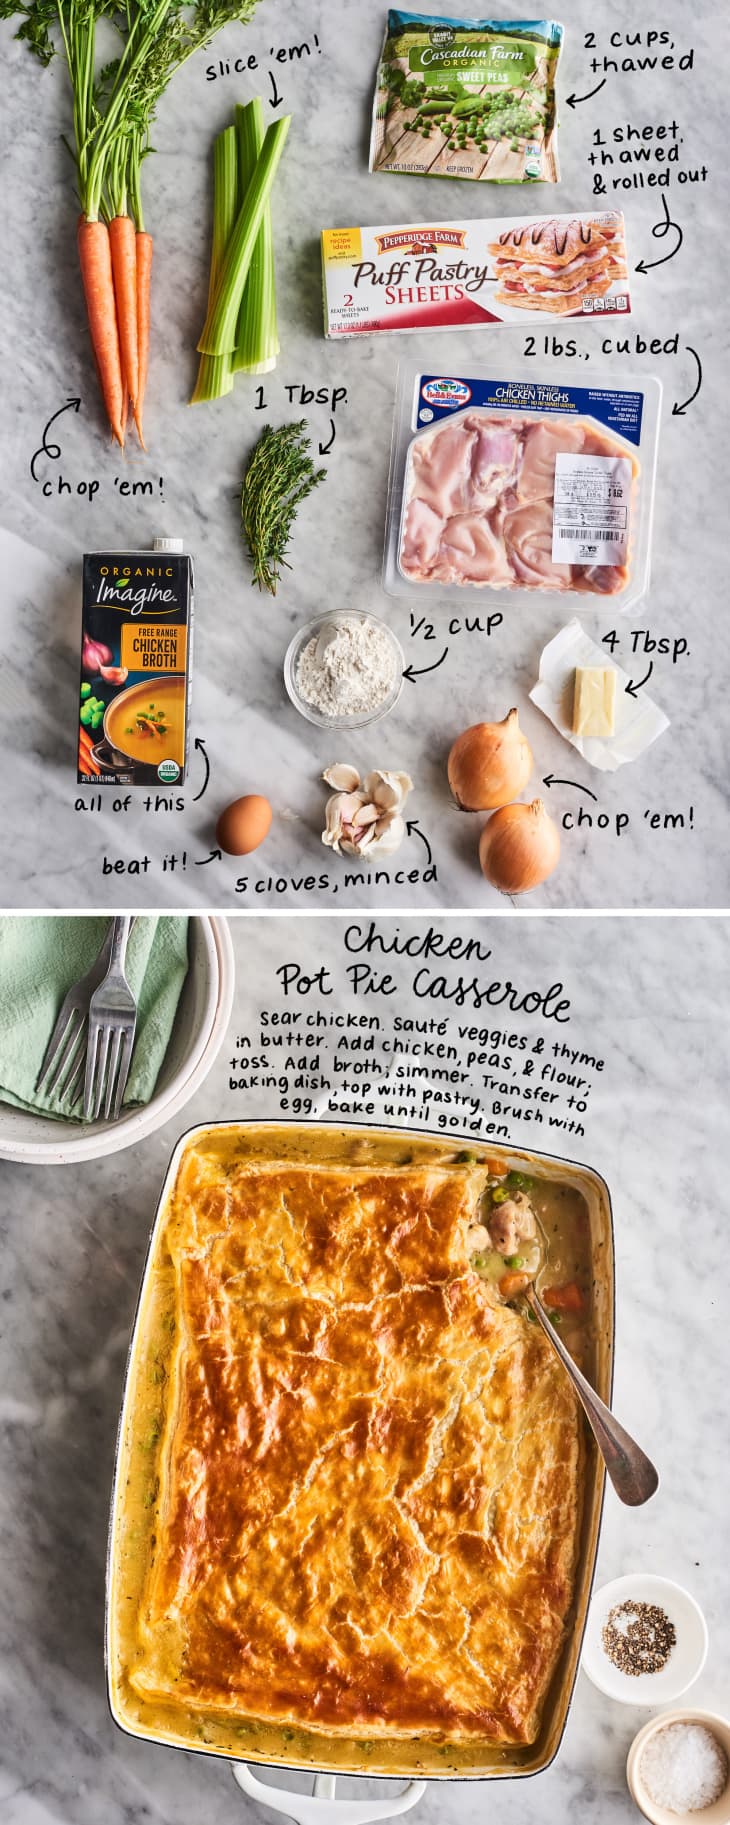 chicken pot pie casserole ingredients and dish